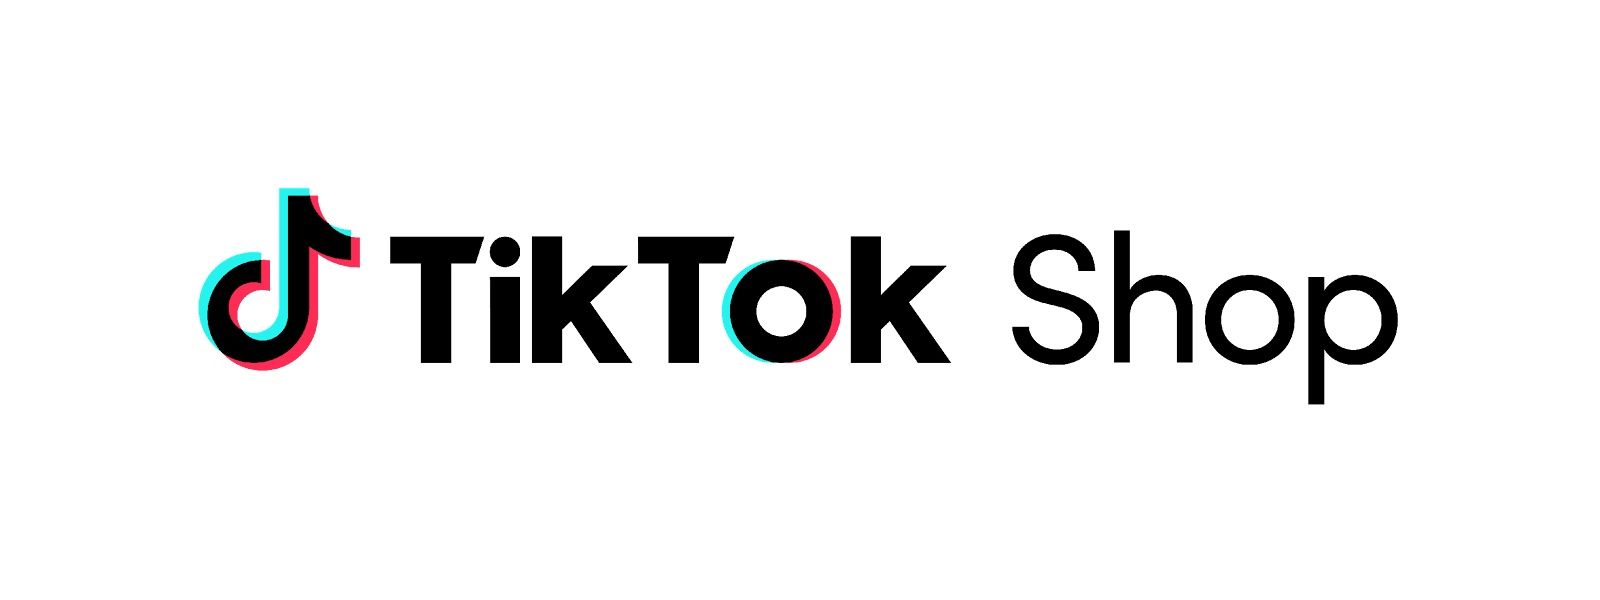 Chạy quảng cáo Tiktok Shop